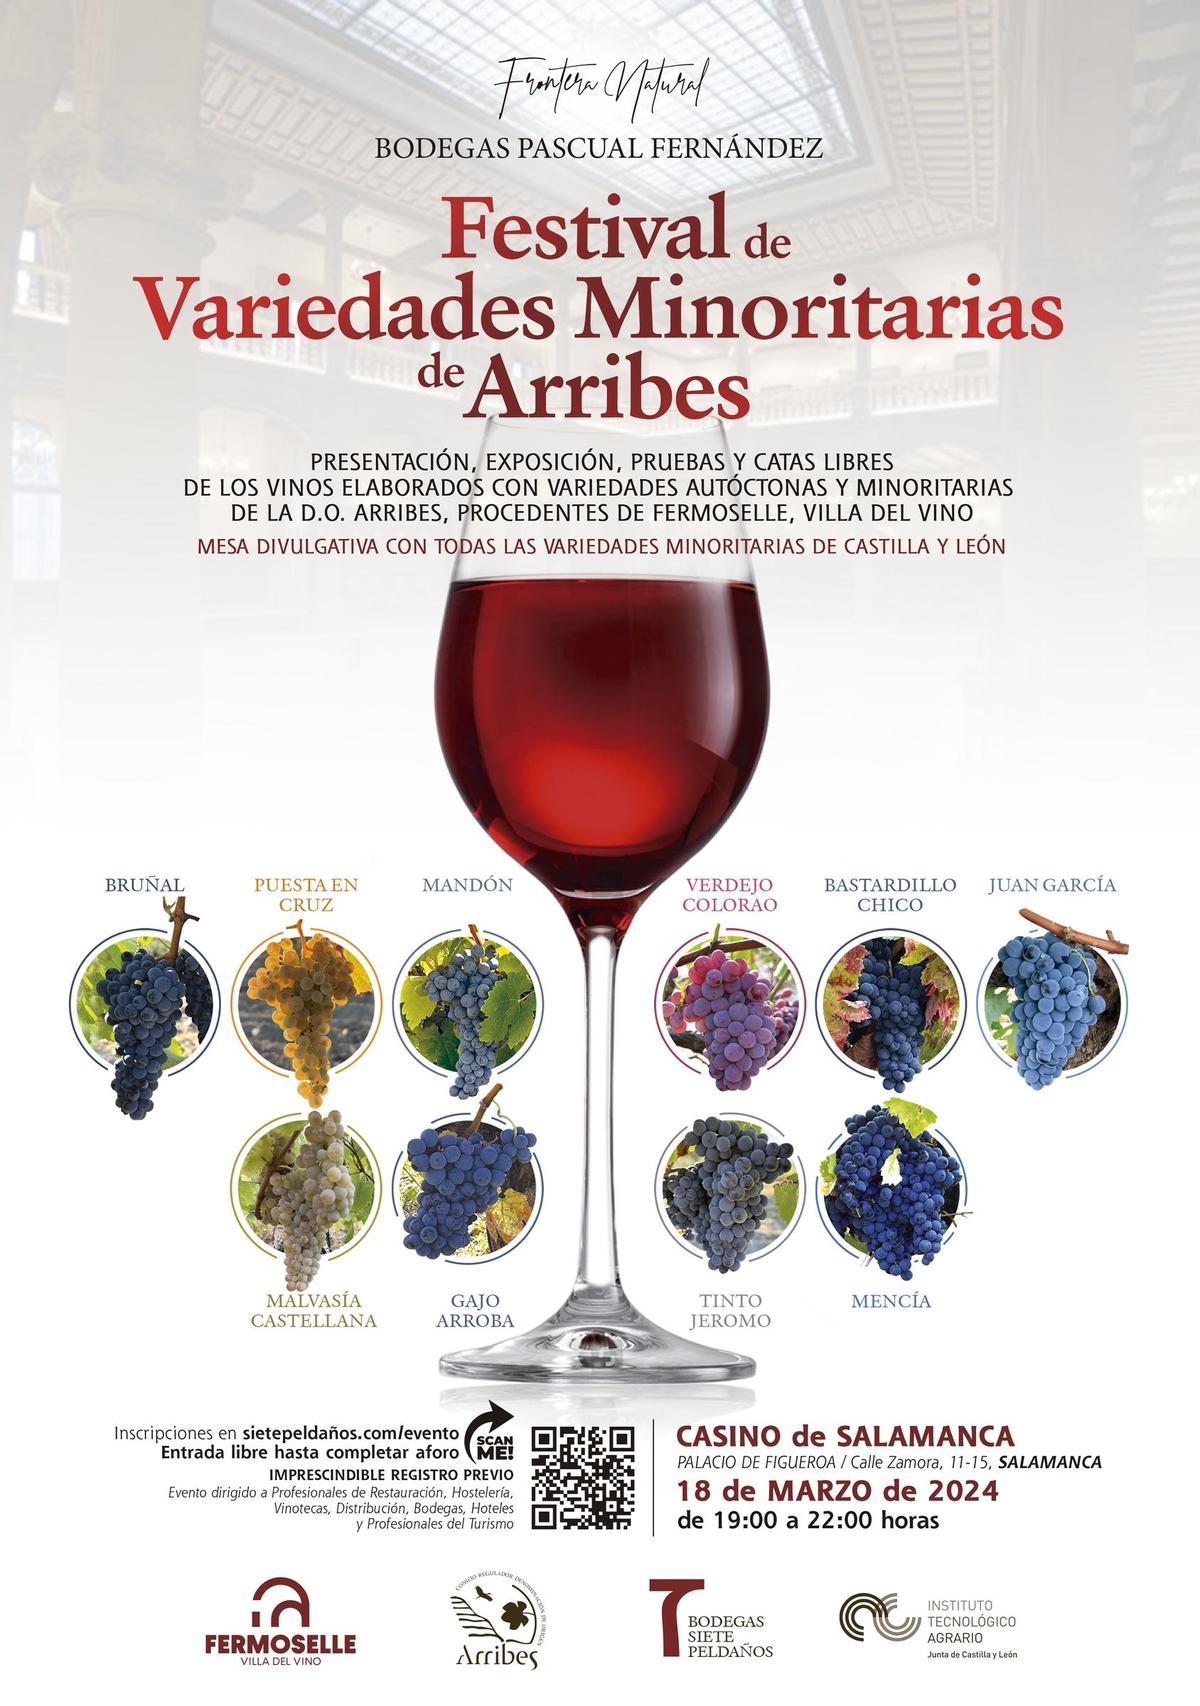 Cartel promocional del festival de variedades minoritarias de Arribes